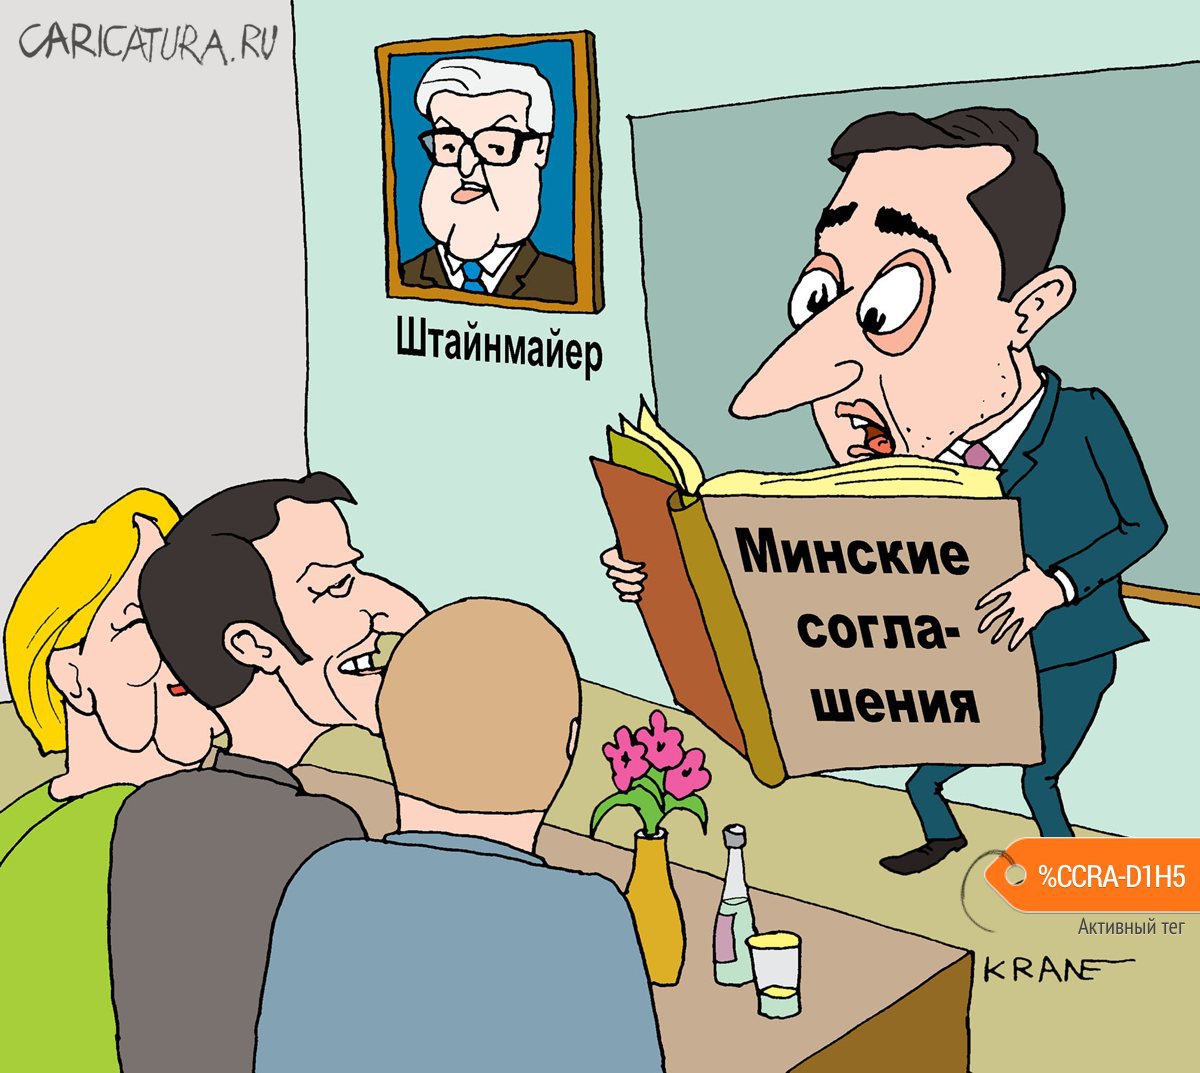 Карикатура "Путин предлагает лучше читать подписанные соглашен", Евгений Кран